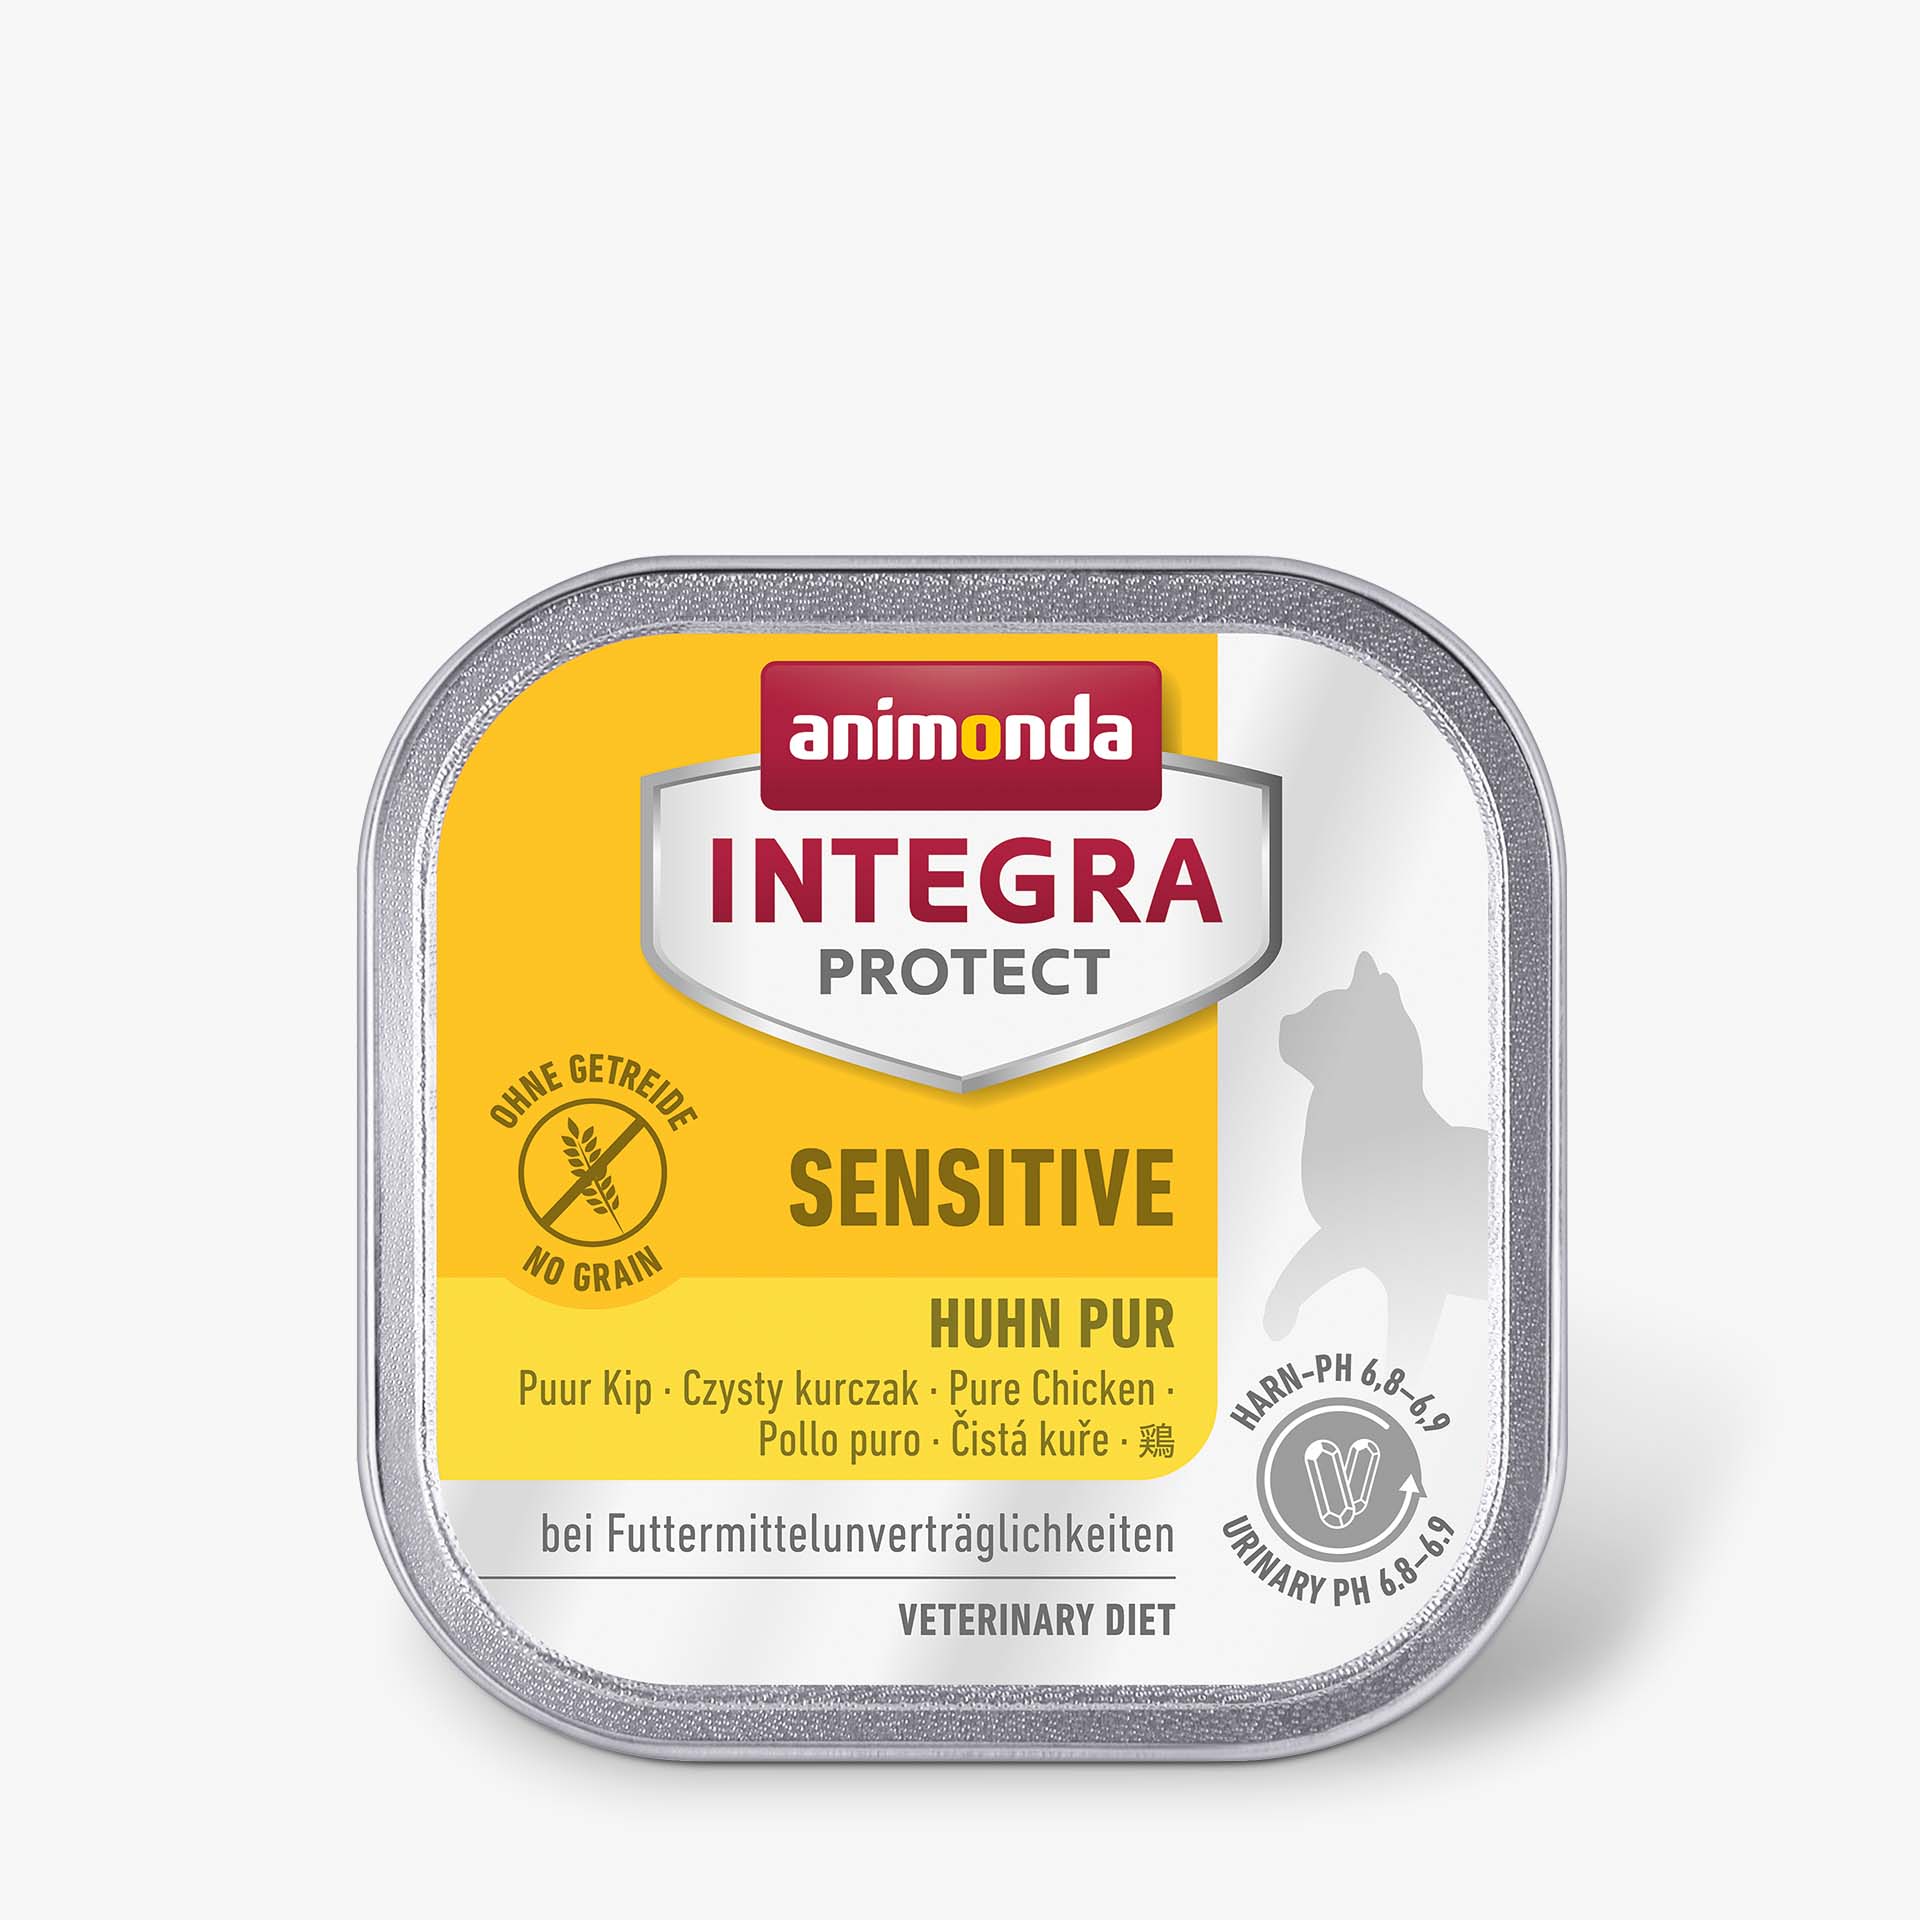 INTEGRA PROTECT pure Chicken Sensitive